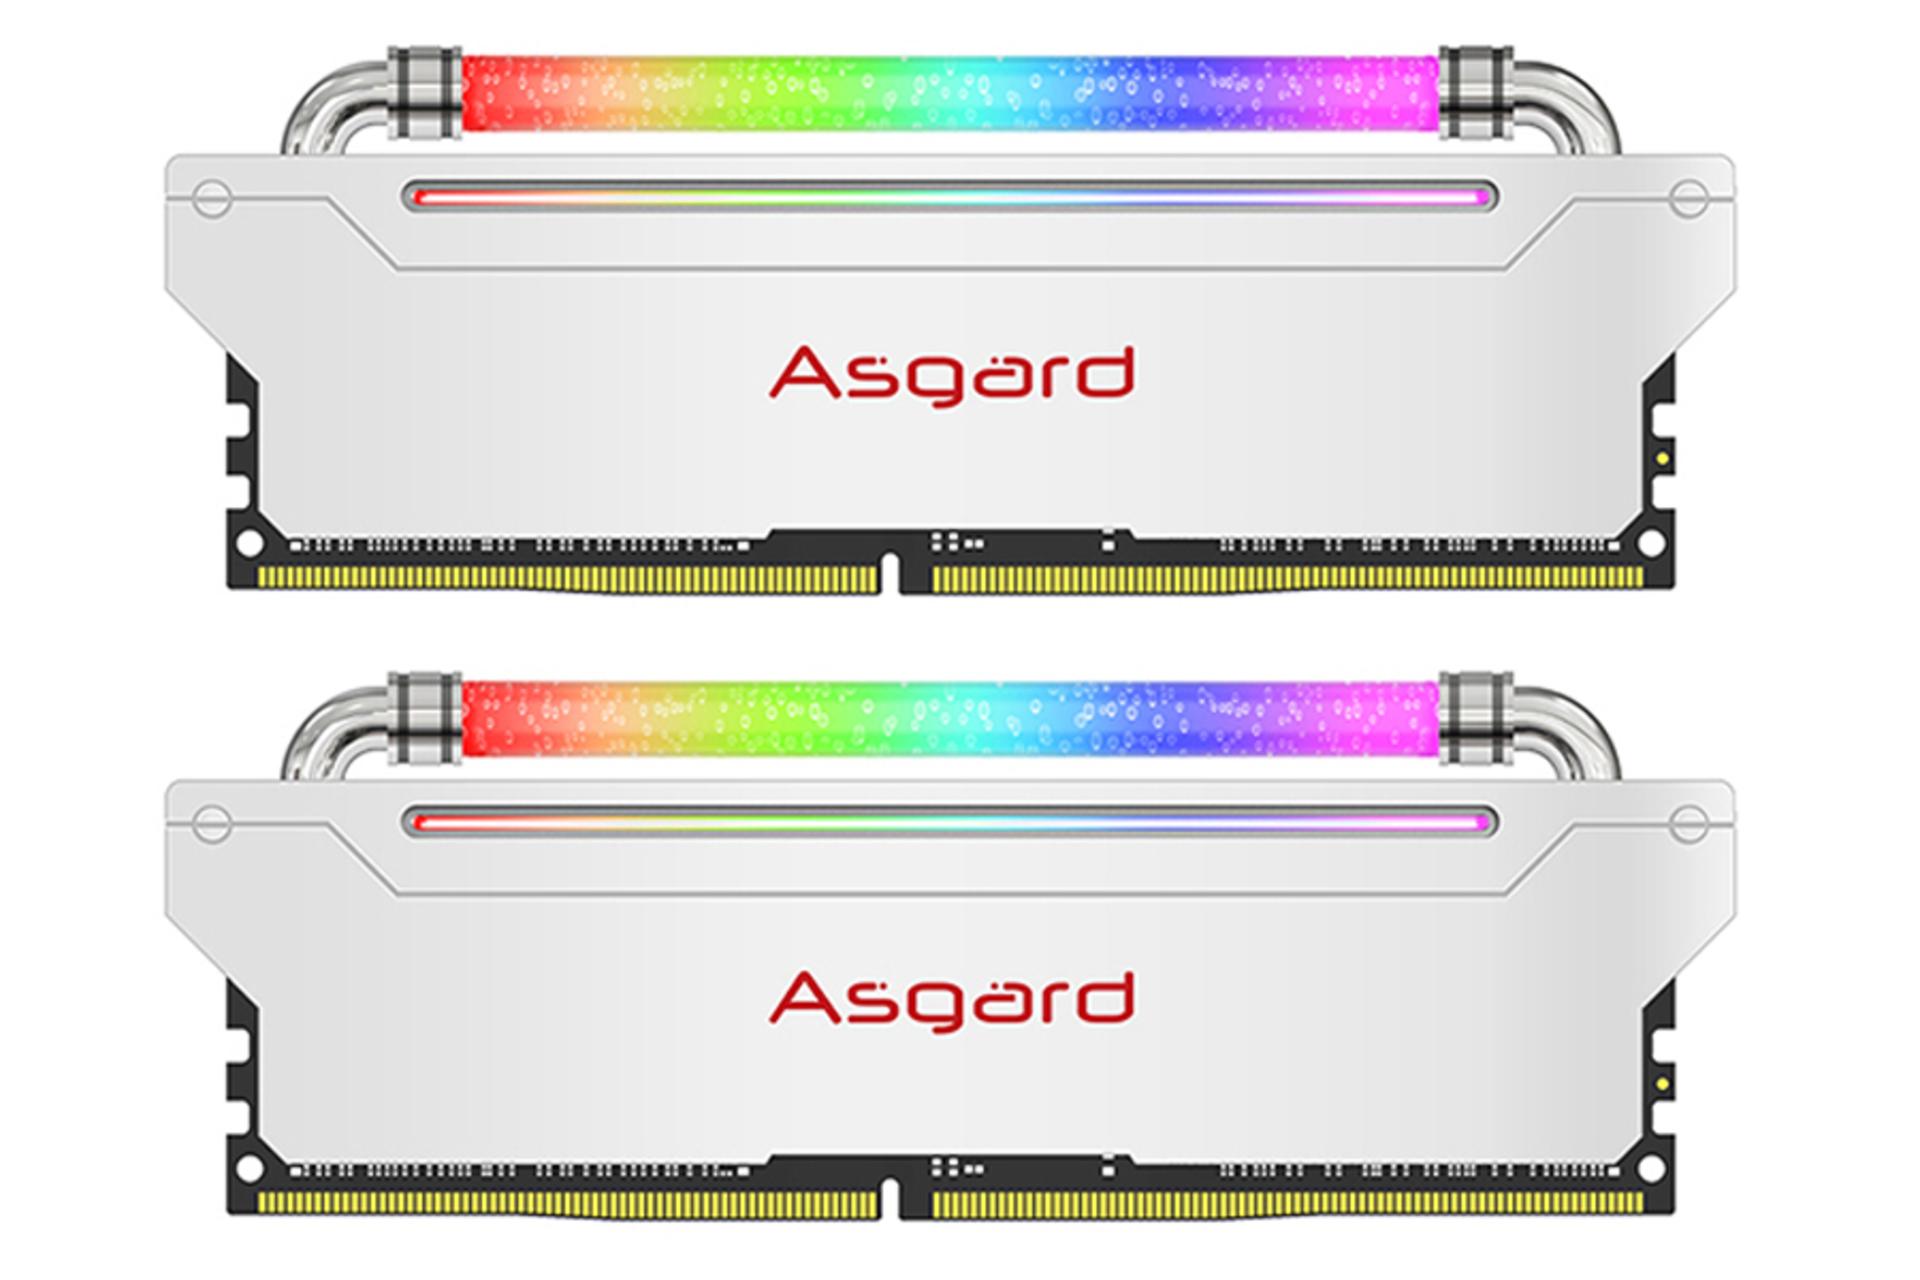 رم ازگارد Loki W3 ظرفیت 16 گیگابایت (2x8) از نوع DDR4-3200